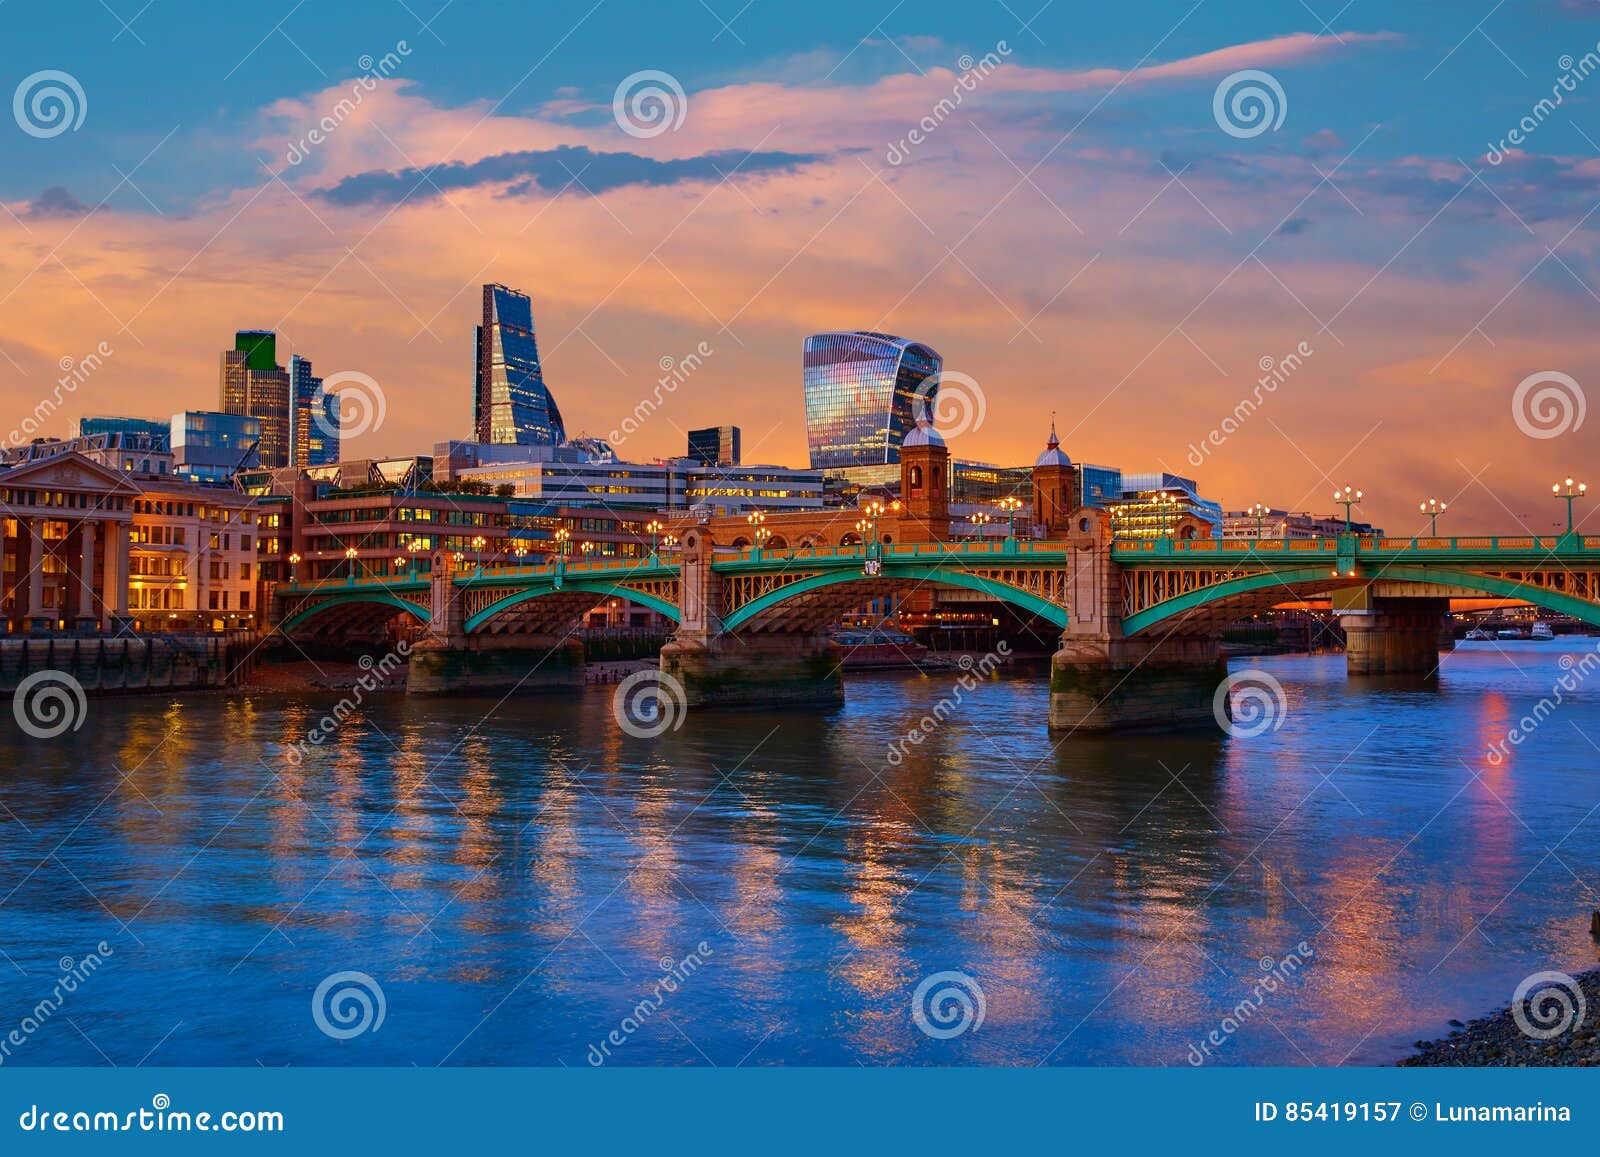 london skyline sunset southwark bridge uk